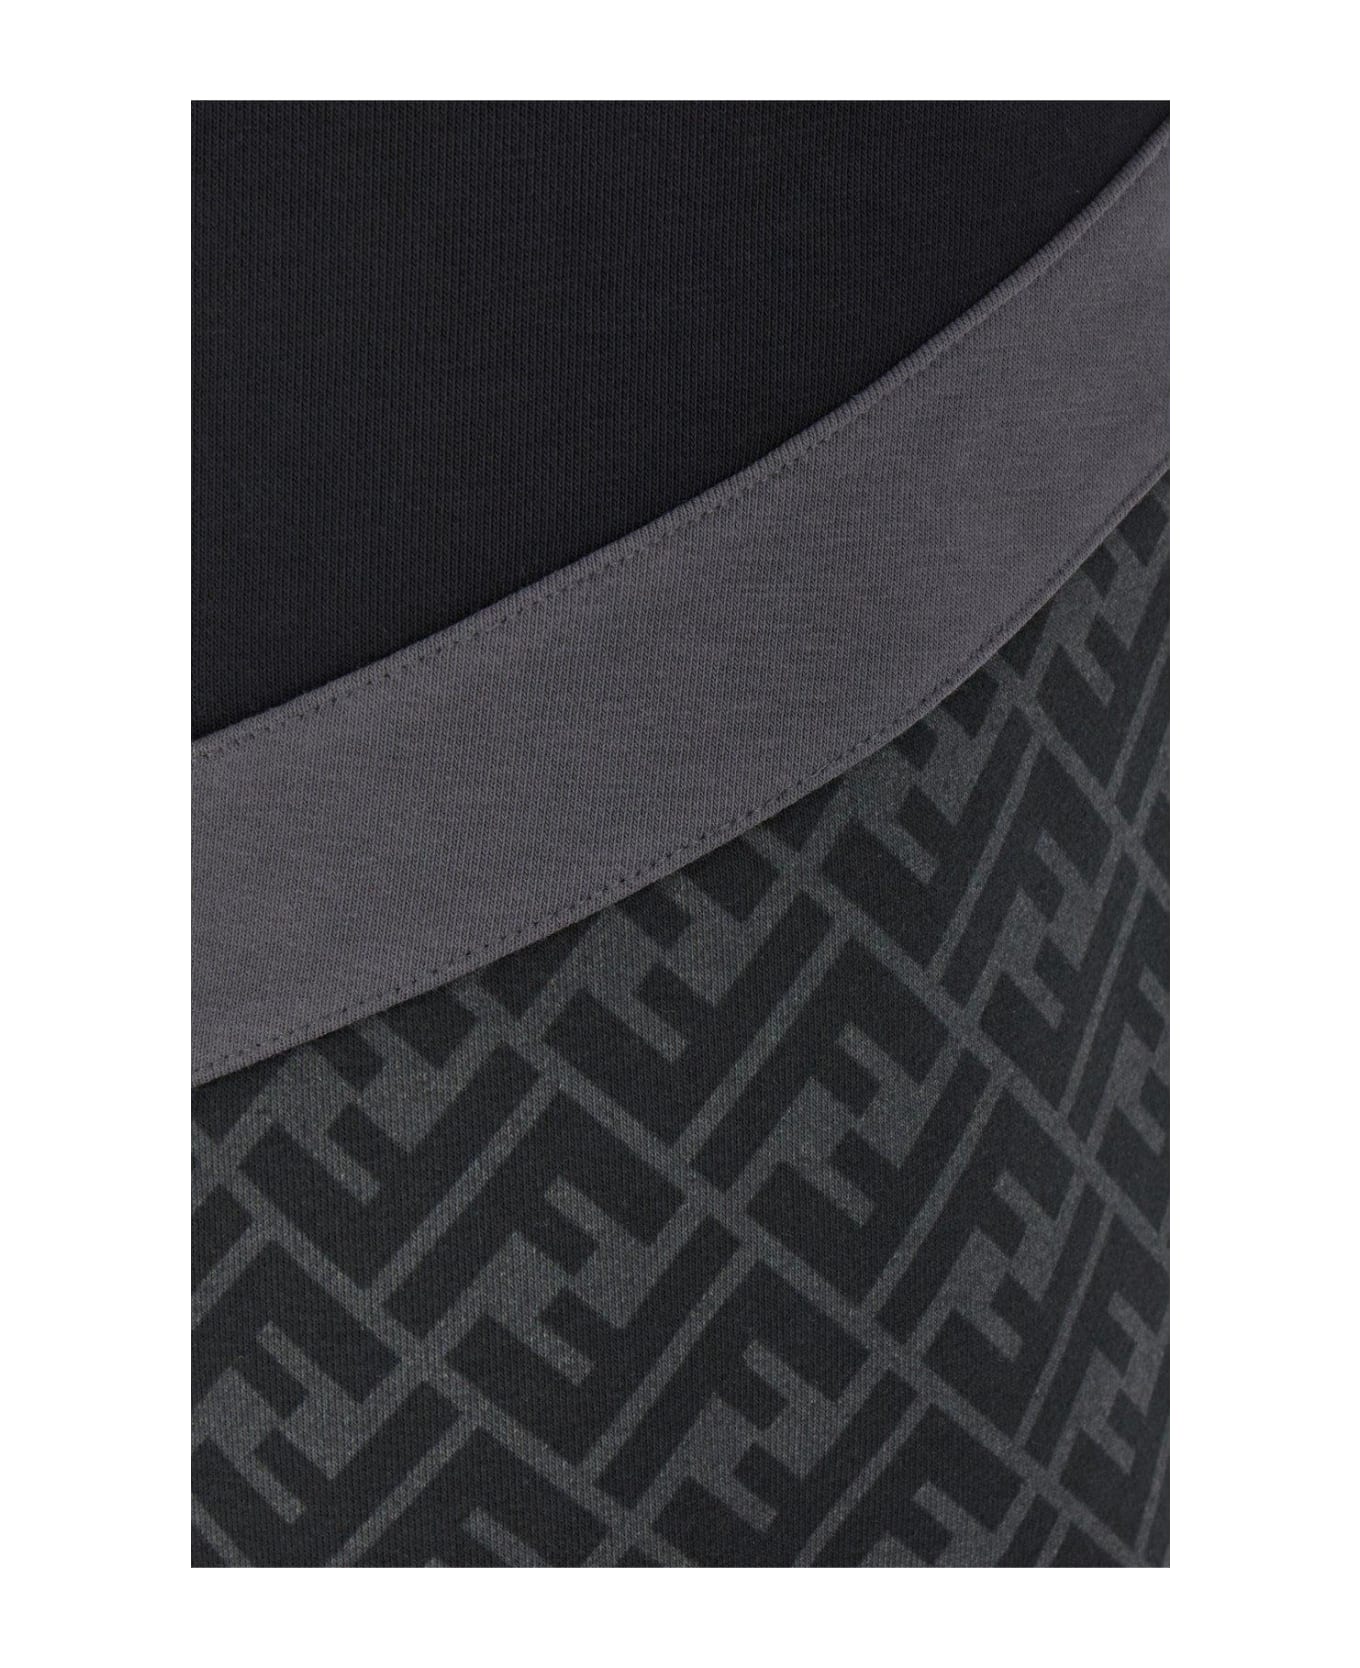 Fendi Bermuda Shorts - Grey ショートパンツ